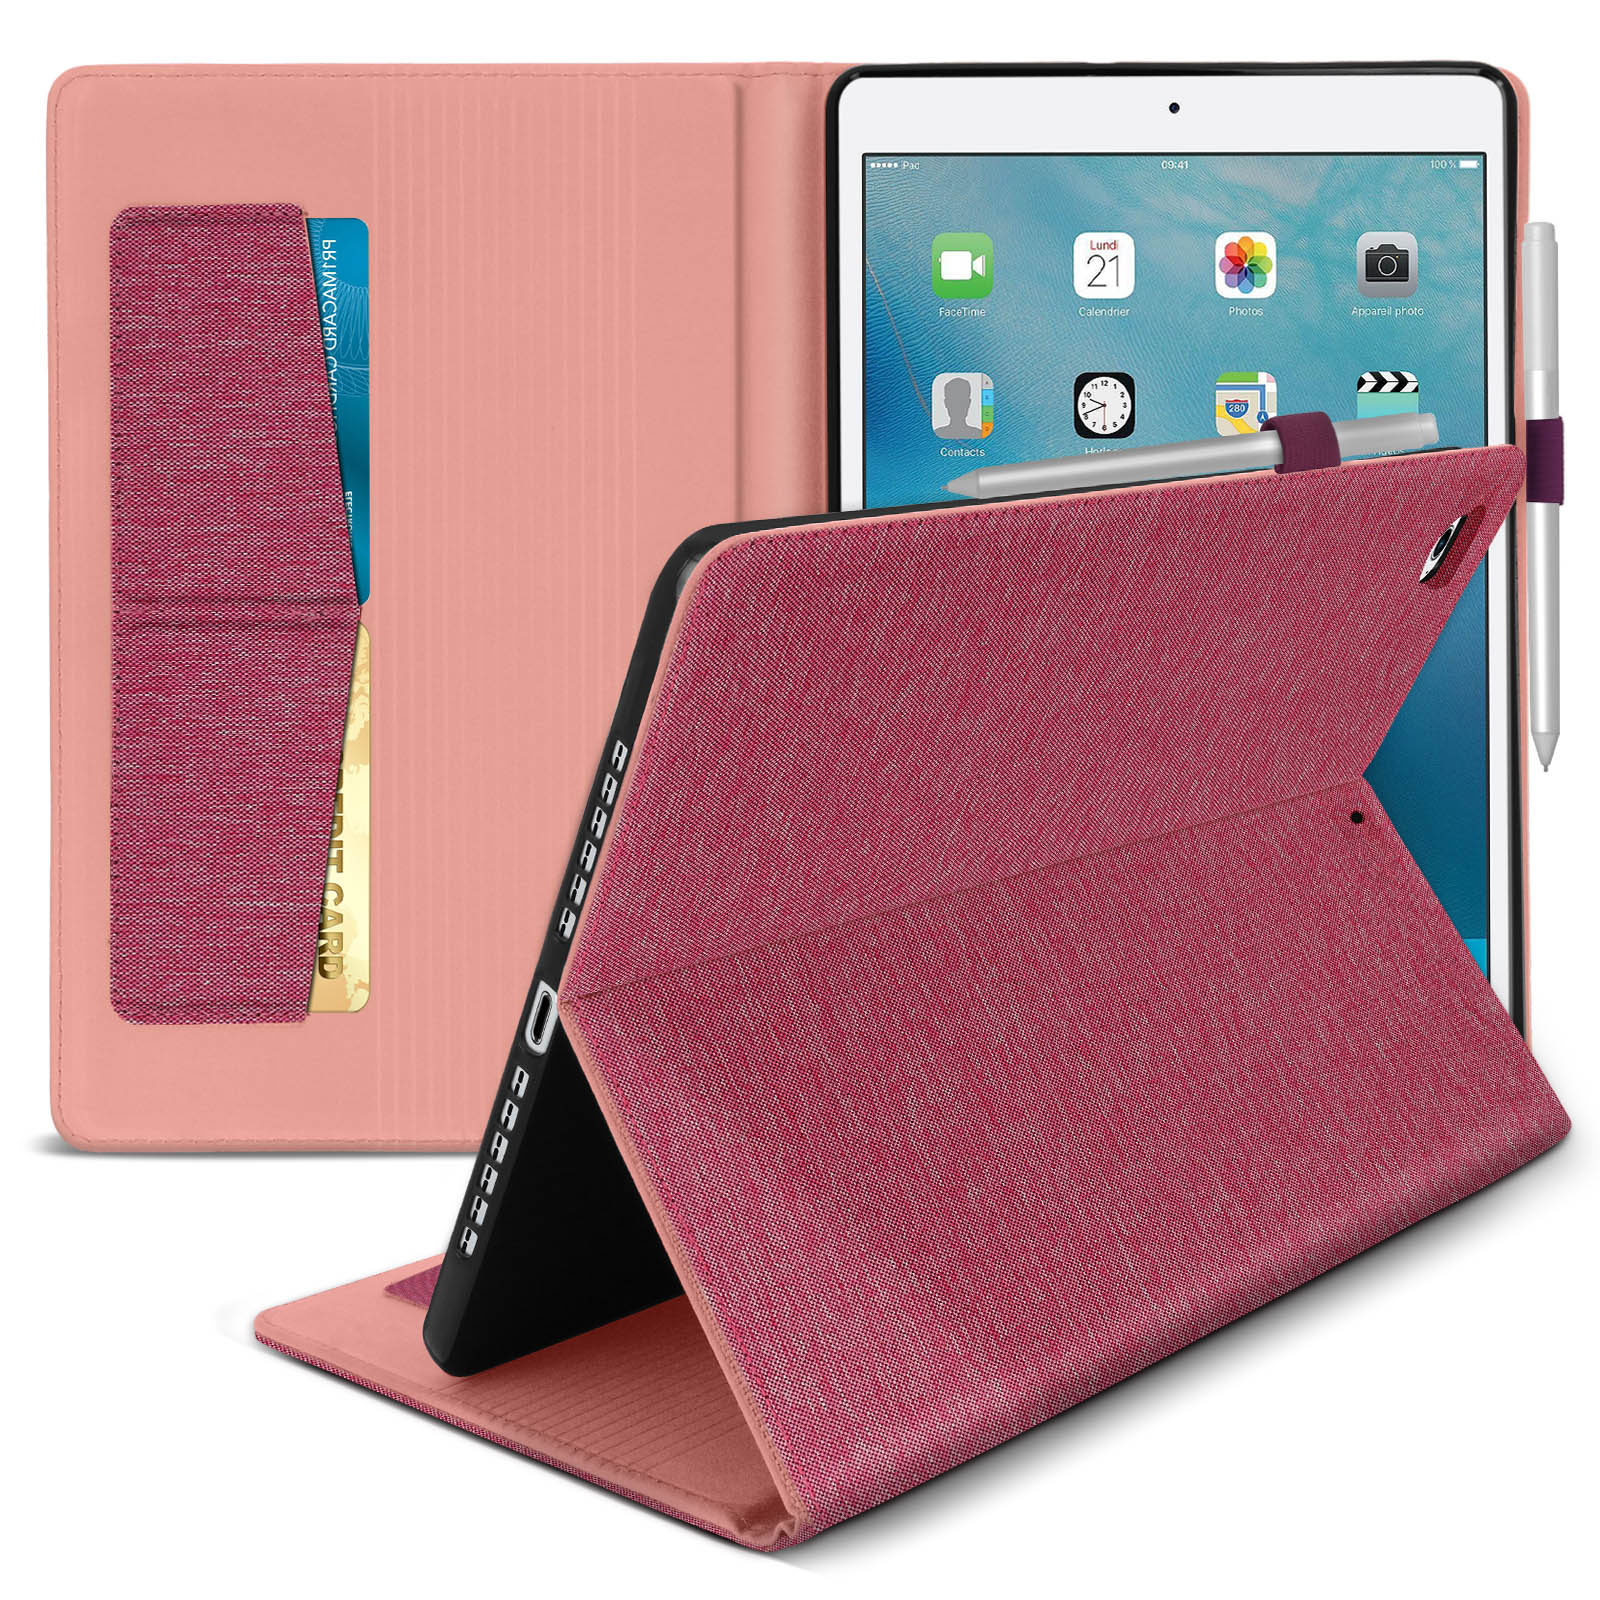 Étui en Tissu avec Porte-cartes et Support Vidéo, Collection Fashion - Rose  p. iPad 5 / iPad 6 / iPad Air - Français